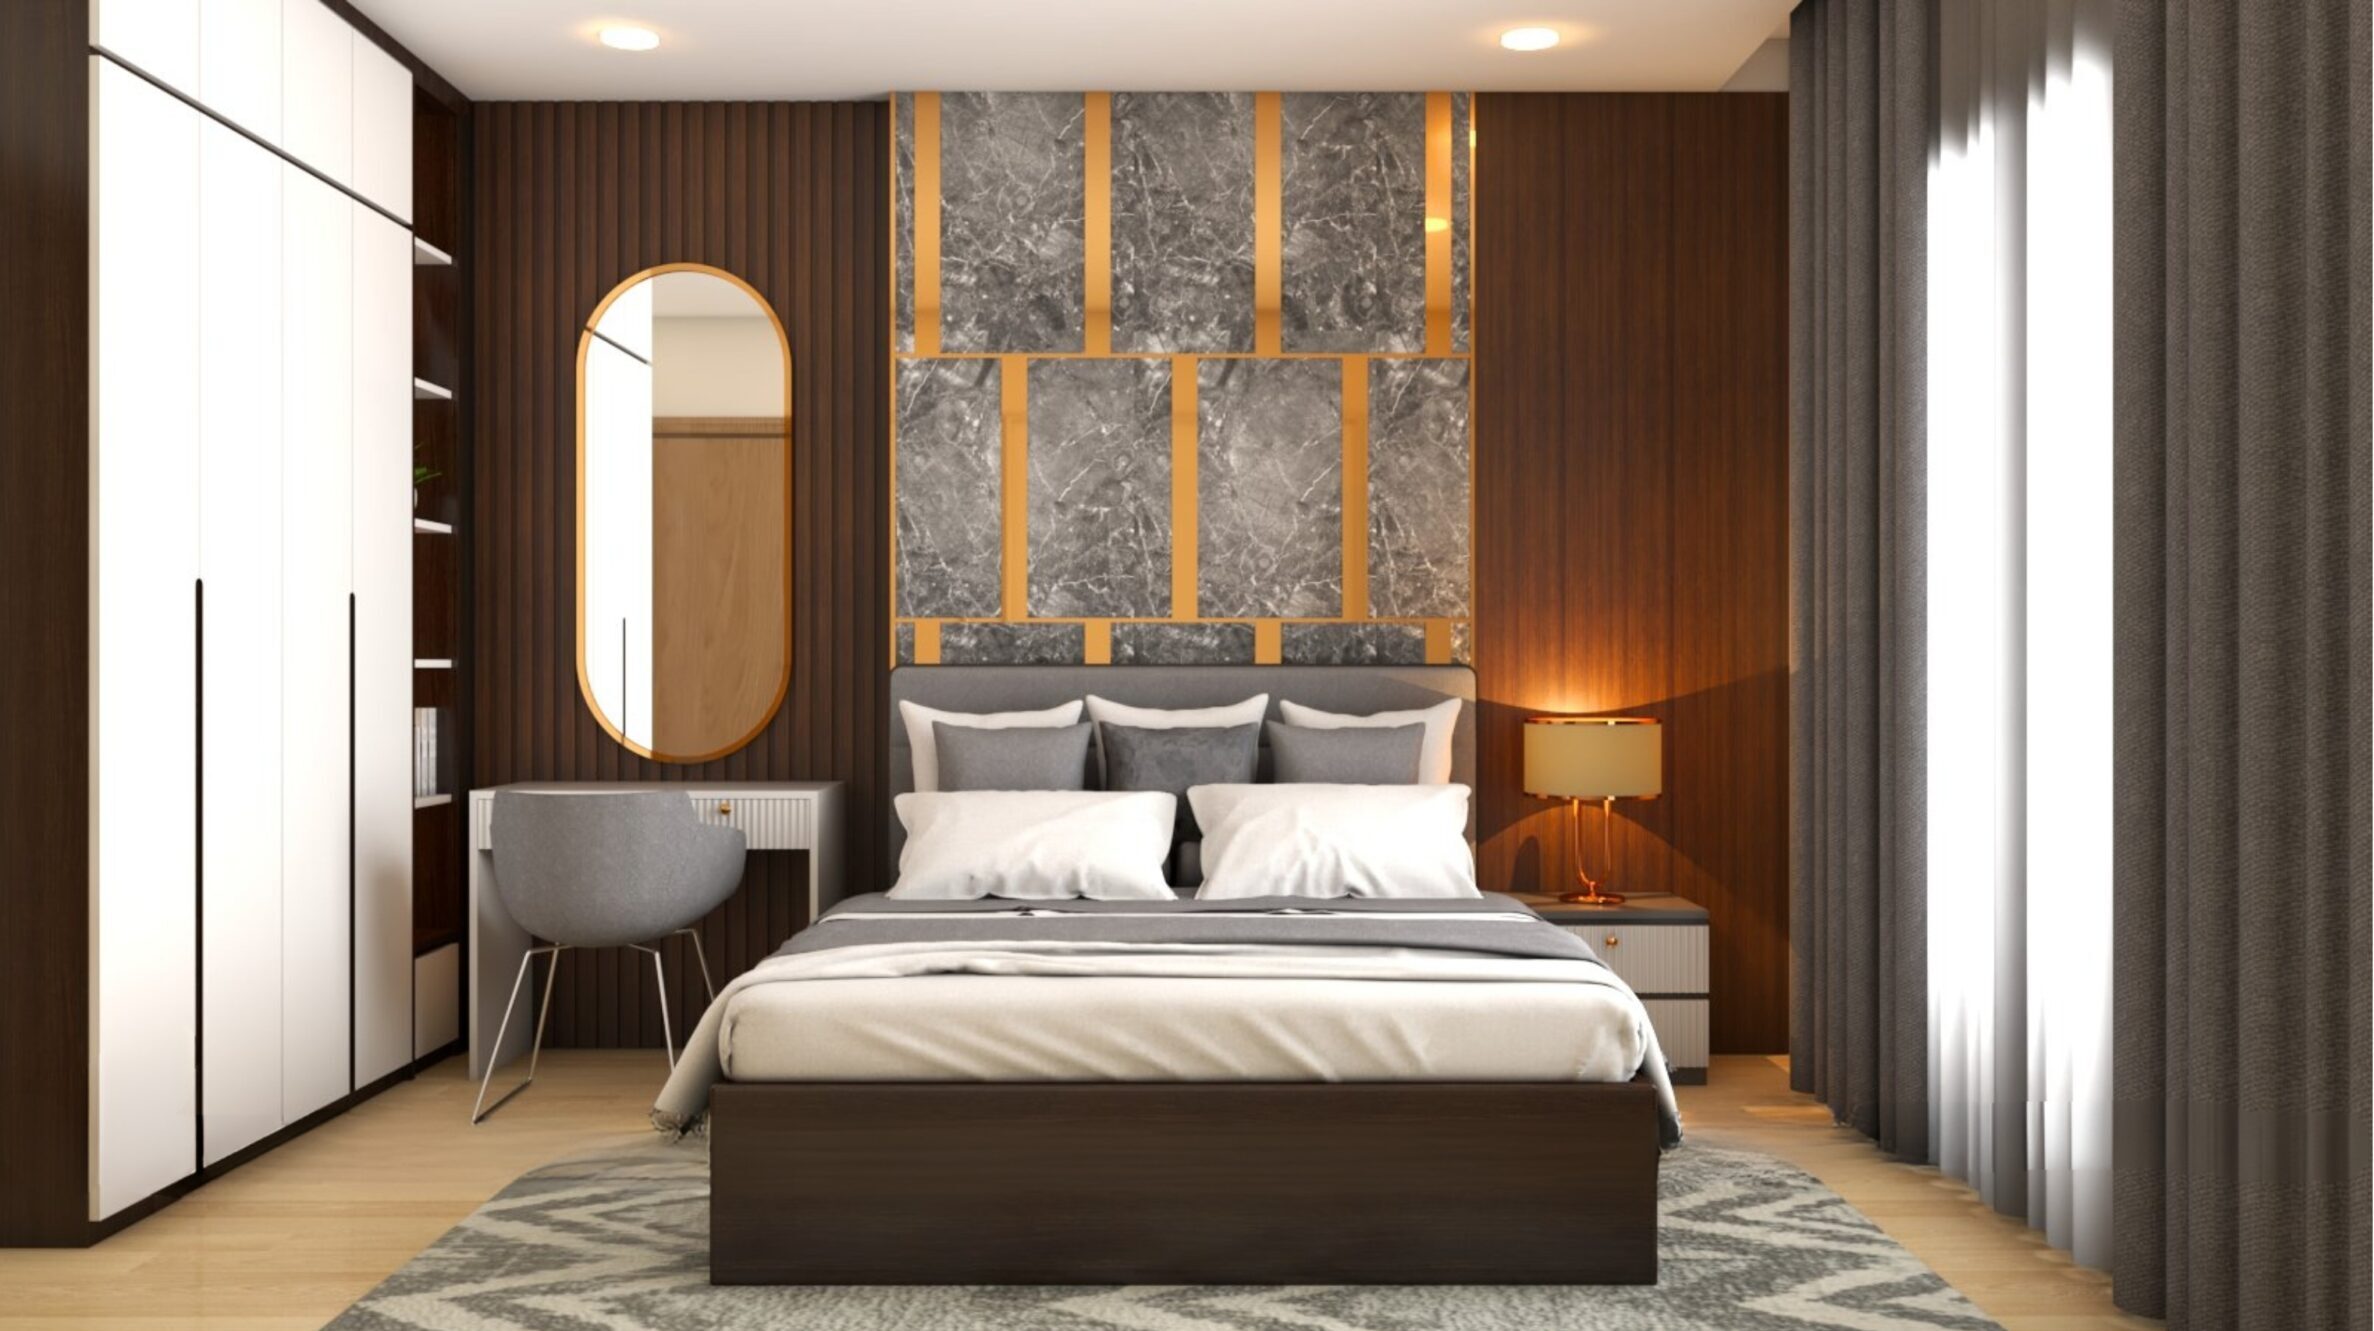 Cụm những tấm nội thất trang trí giúp phòng ngủ trở nên sang trọng hơn